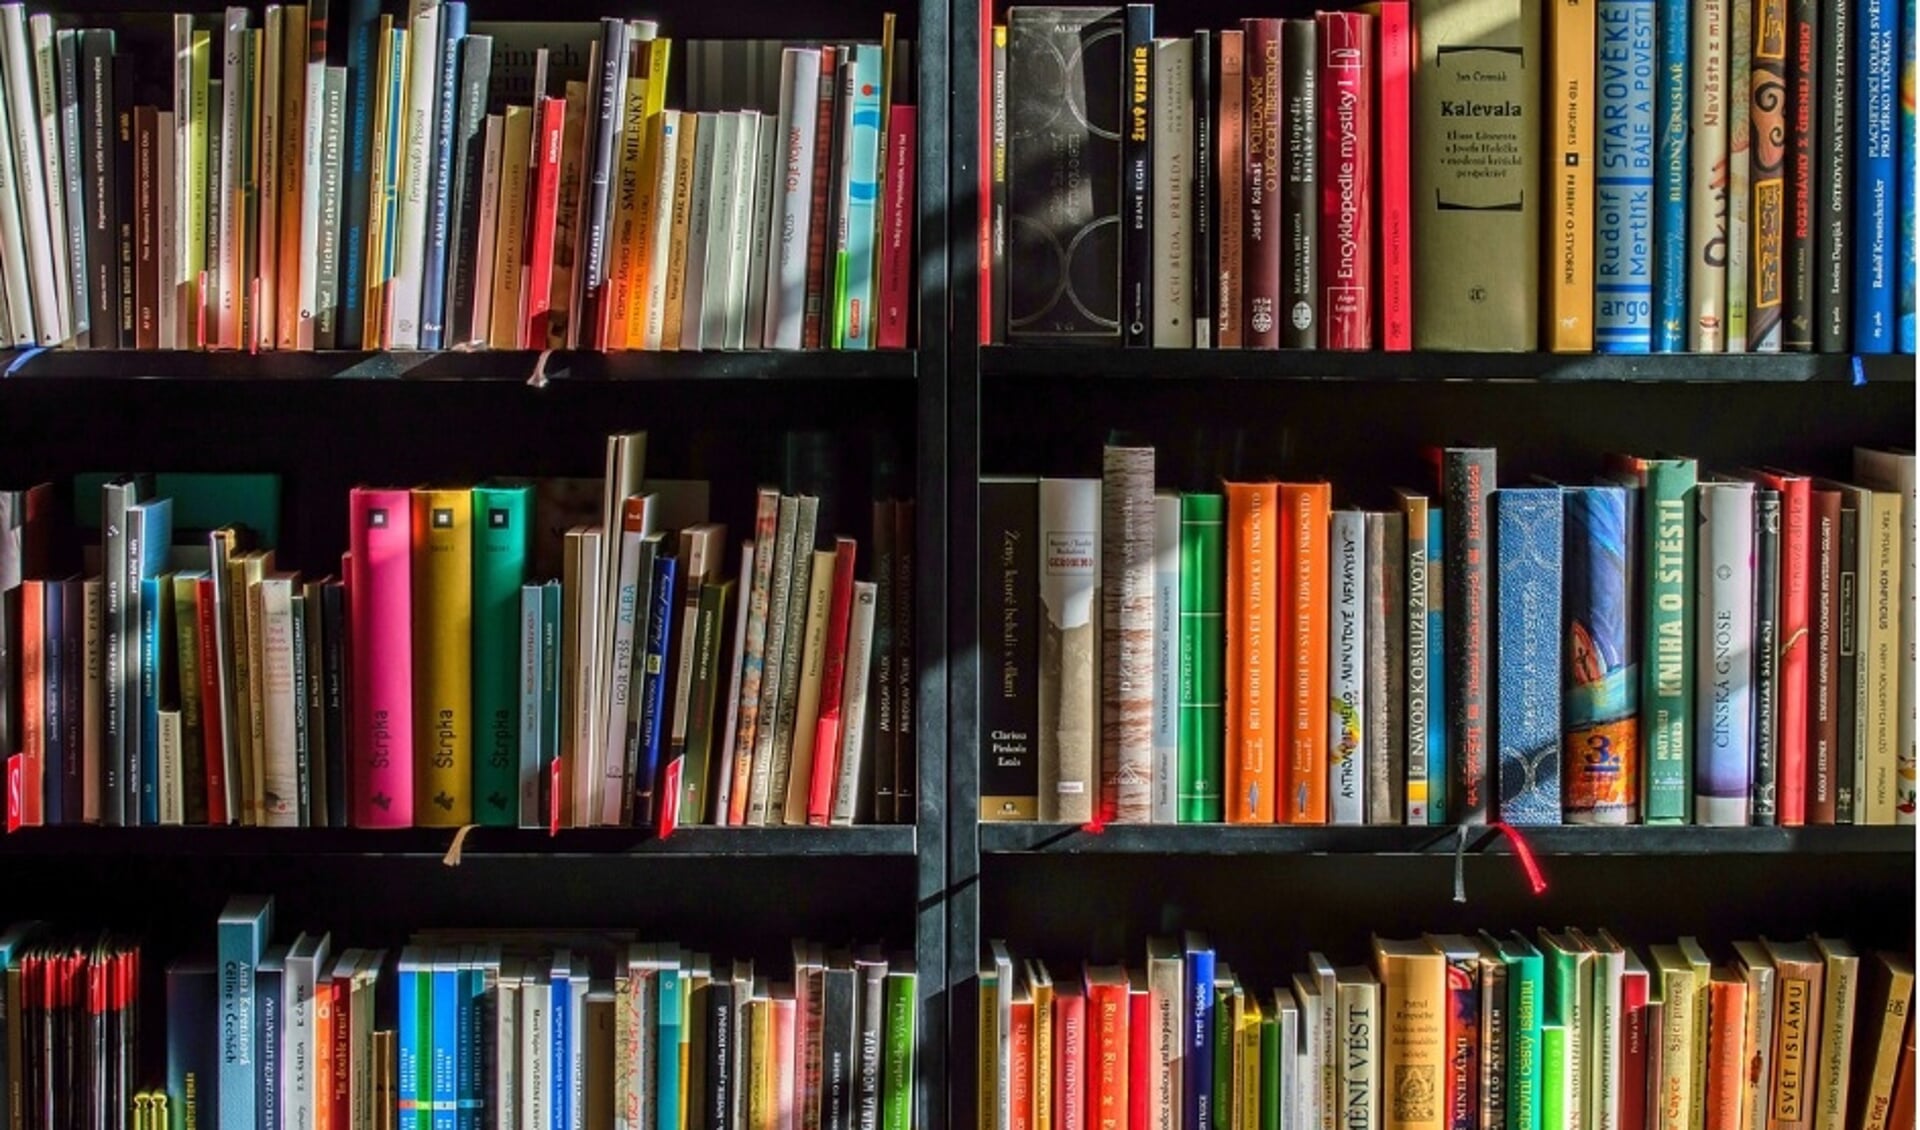 Steeds meer bibliotheken in Nederland rekenen geen boetes meer voor de jeugd.